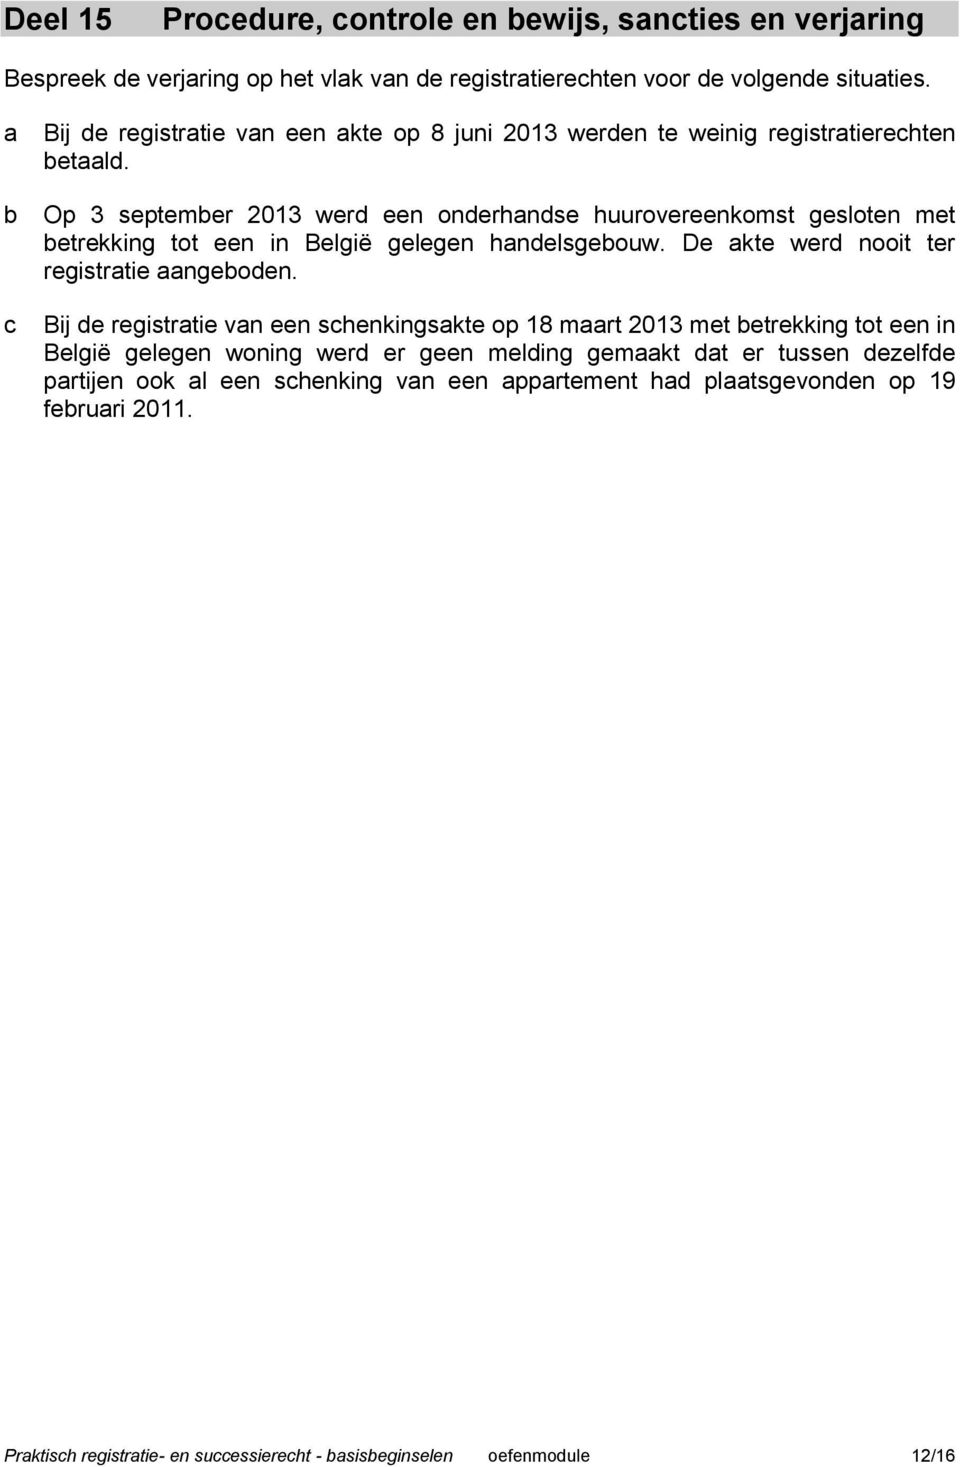 Op 3 septemer 2013 wer een onerhnse huurovereenkomst gesloten met etrekking tot een in België gelegen hnelsgeouw. De kte wer nooit ter registrtie ngeoen.